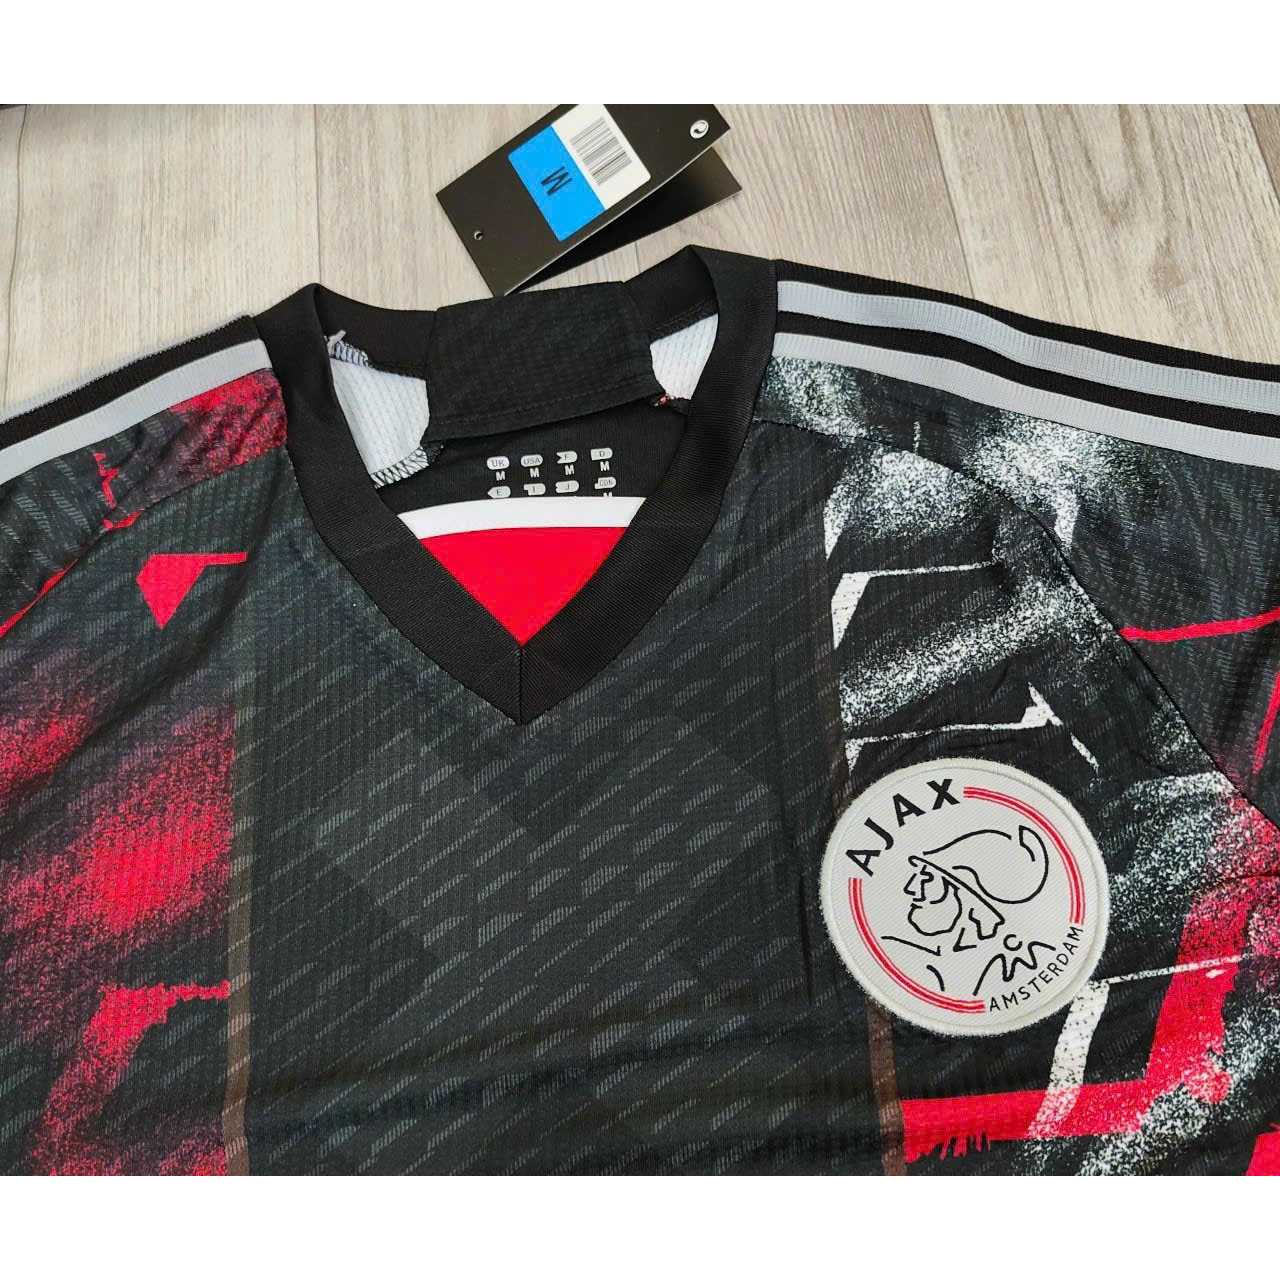 Bộ quần áo đá banh clb bóng đá fan người hâm mộ thiết kế ziggo ajax đen hoạ tiết đỏ logo thêu vải gai mịn thái 1